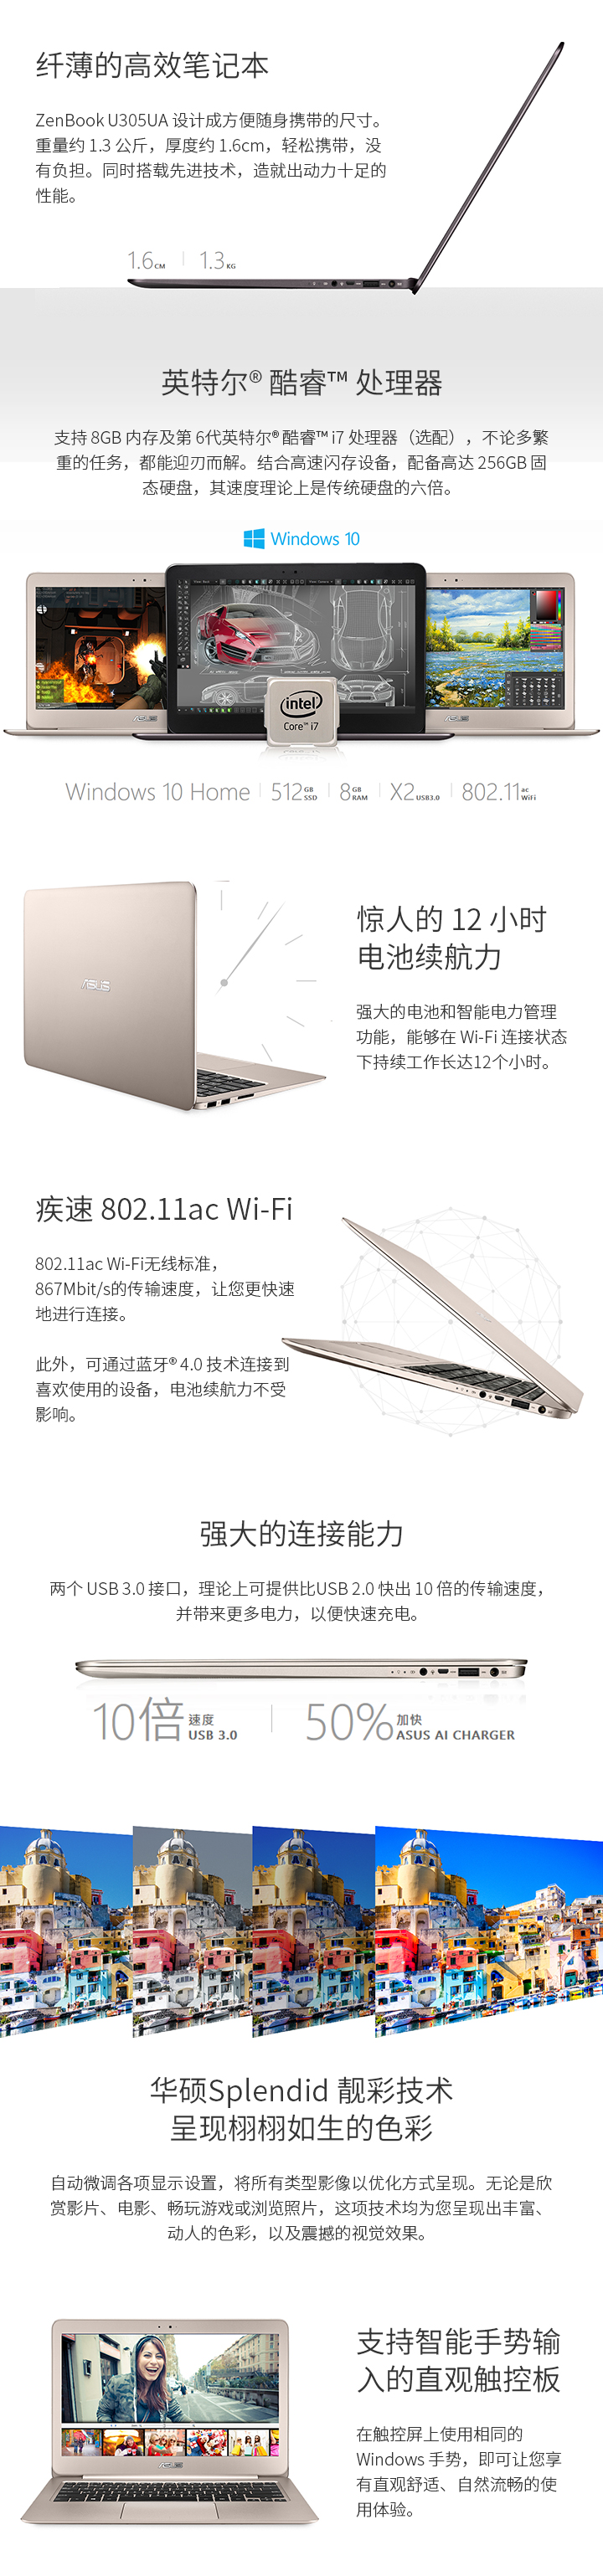 华硕ZenBook U305UA免费试用,评测